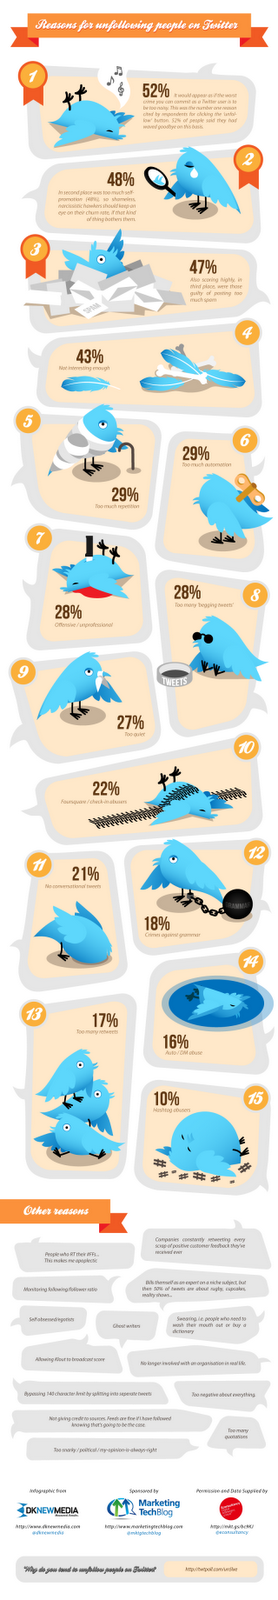 15 Principales Razones por las que Dejan de Seguirnos en Twitter